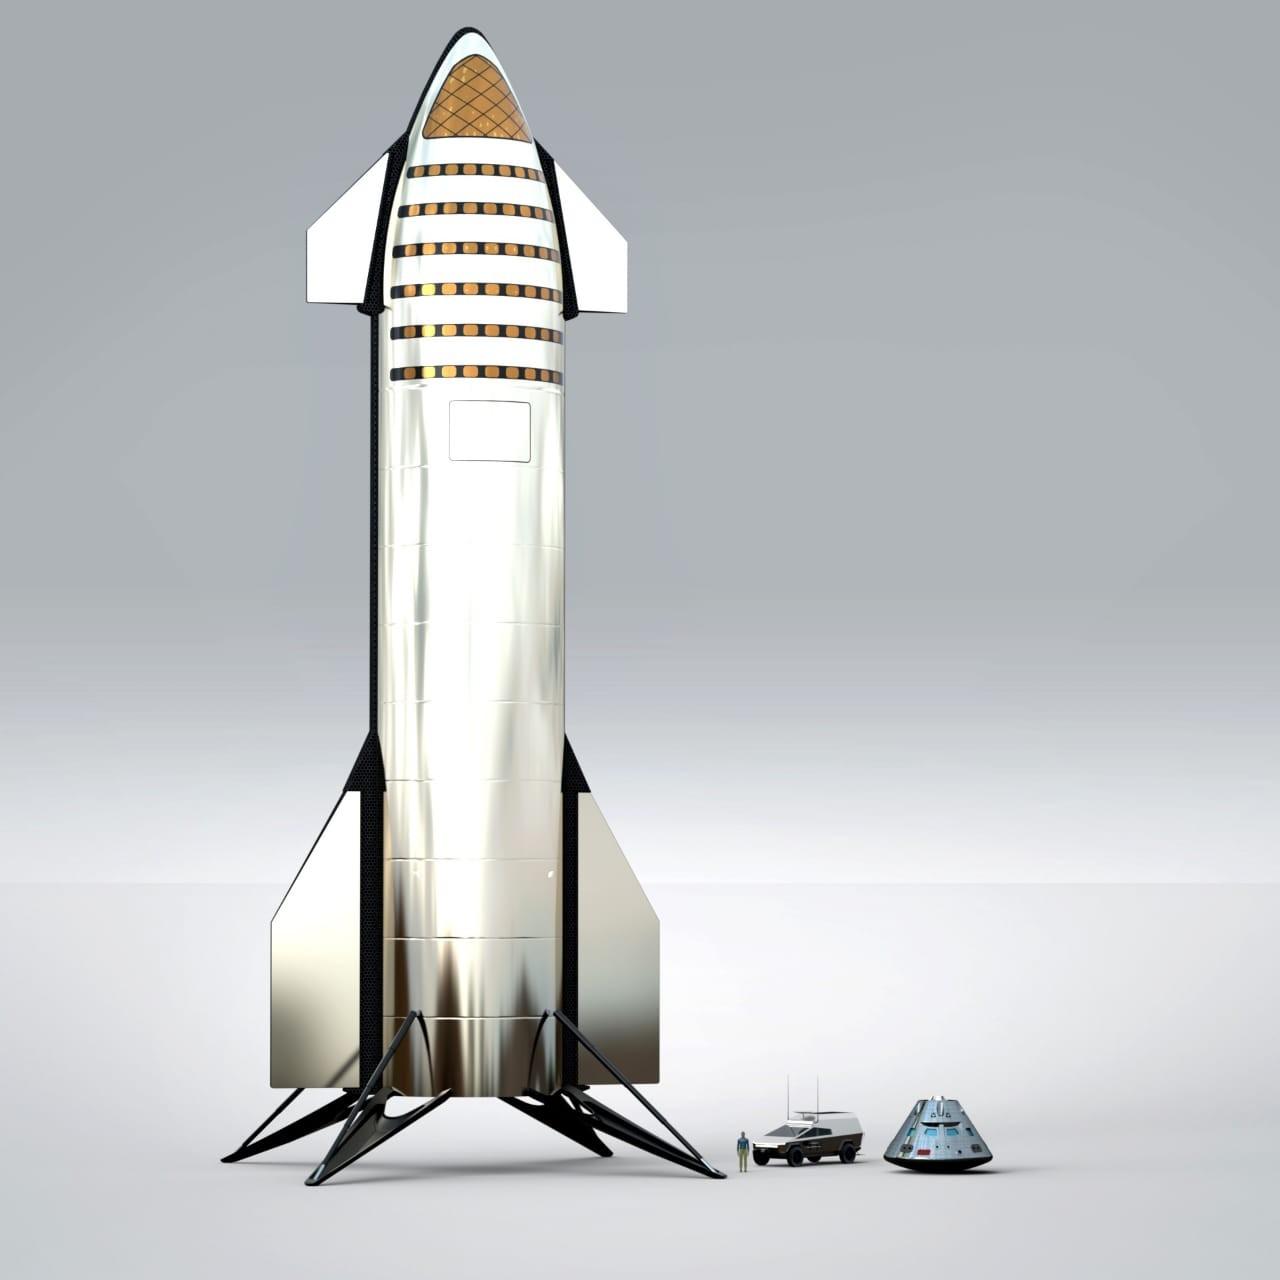  Сравнение размеров кораблей StarShip и Orion (современный проект КК для лунных экспедиций, NASA) Марс